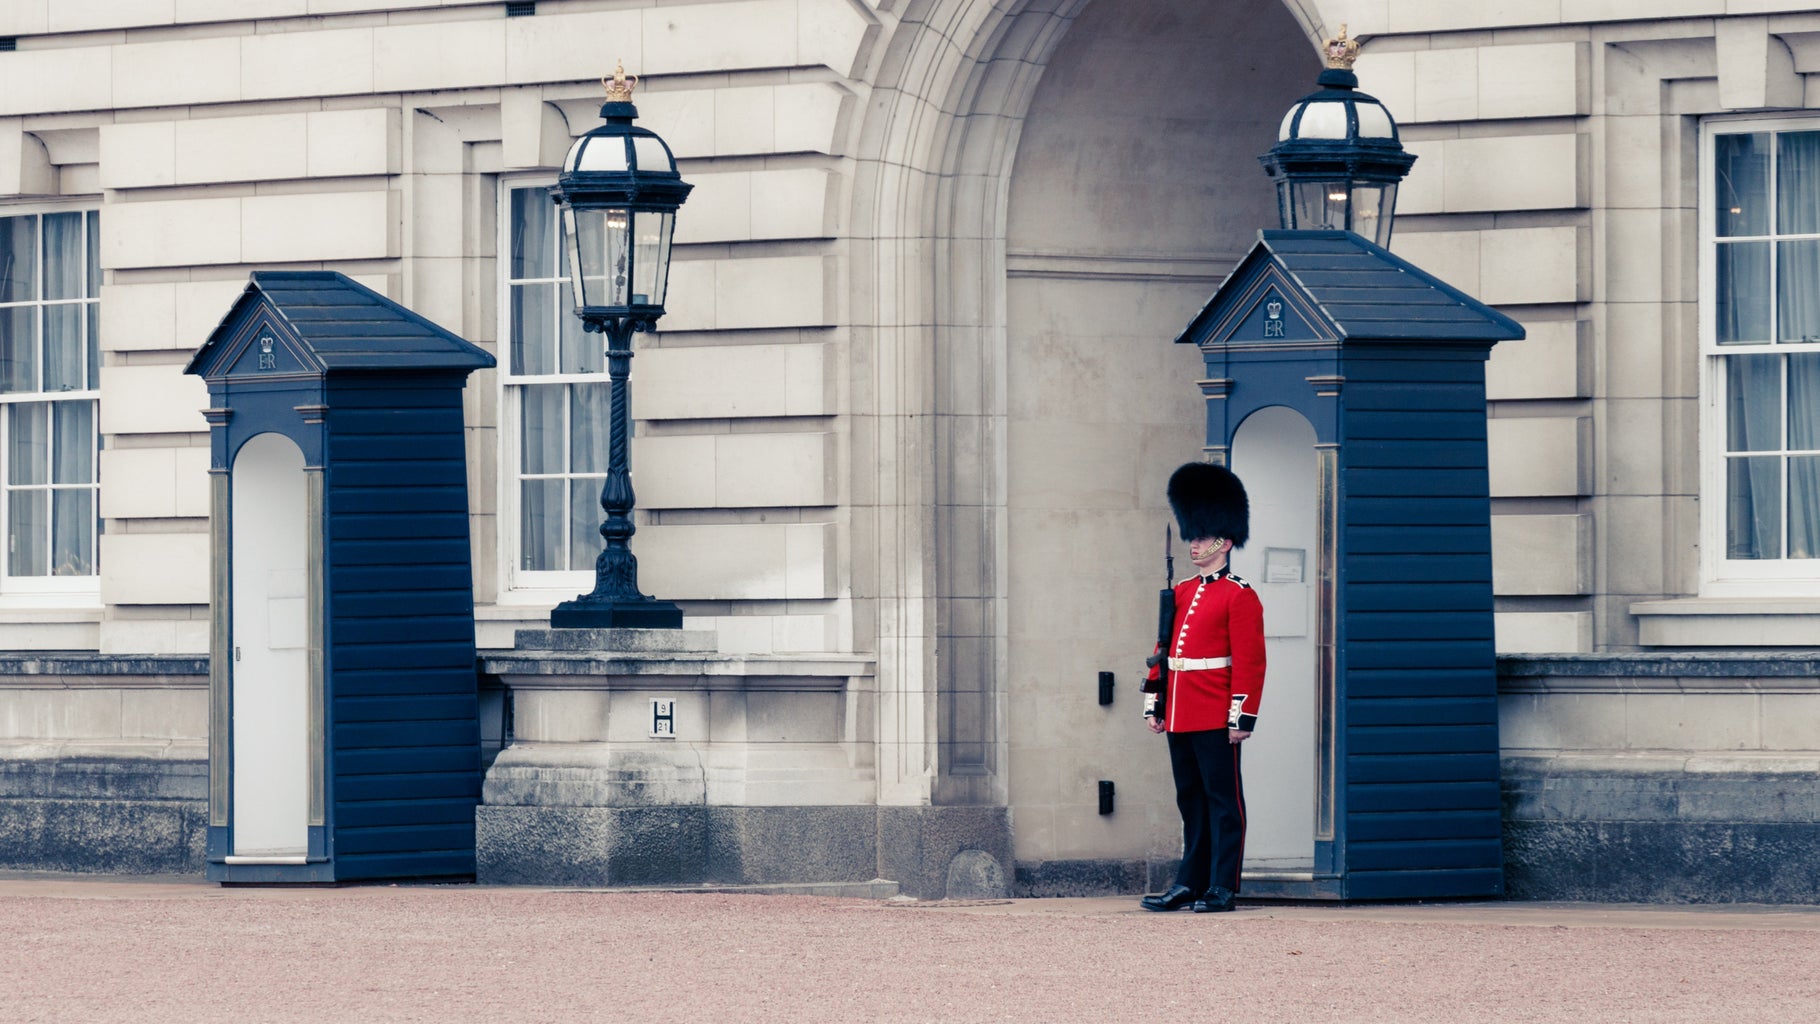 Buckingham Palace, London, UK; royalty, England, soldier